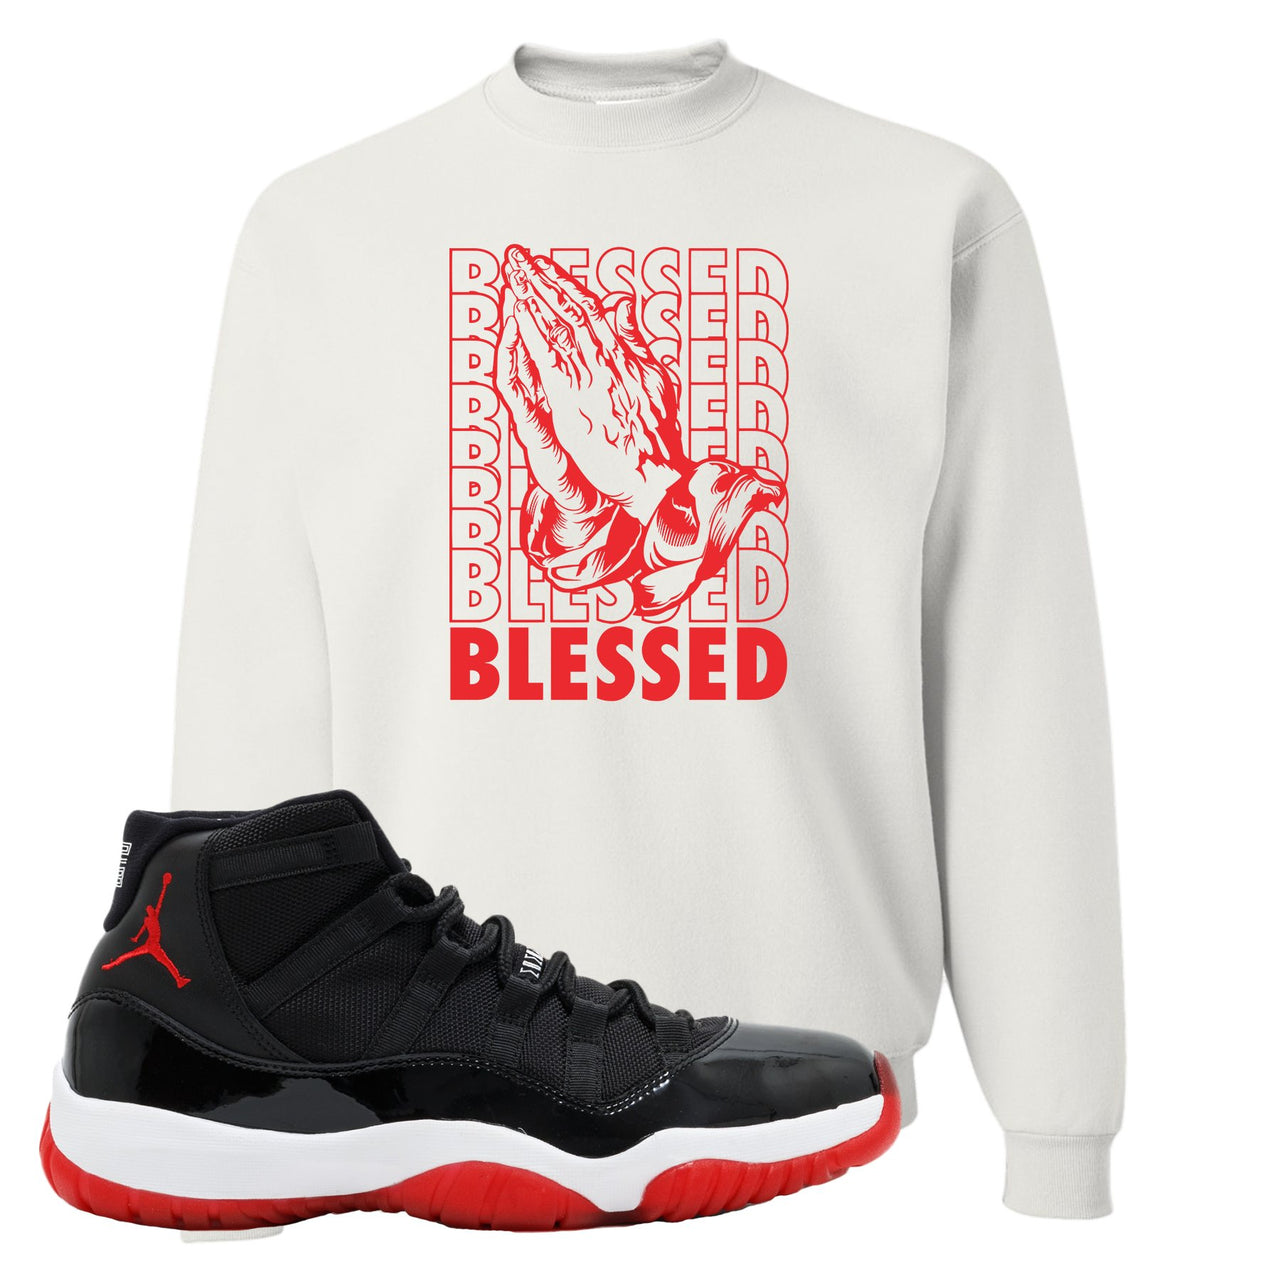 Jordan 11 Bred Blessed White Sneaker Hook Up Crewneck Sweatshirt